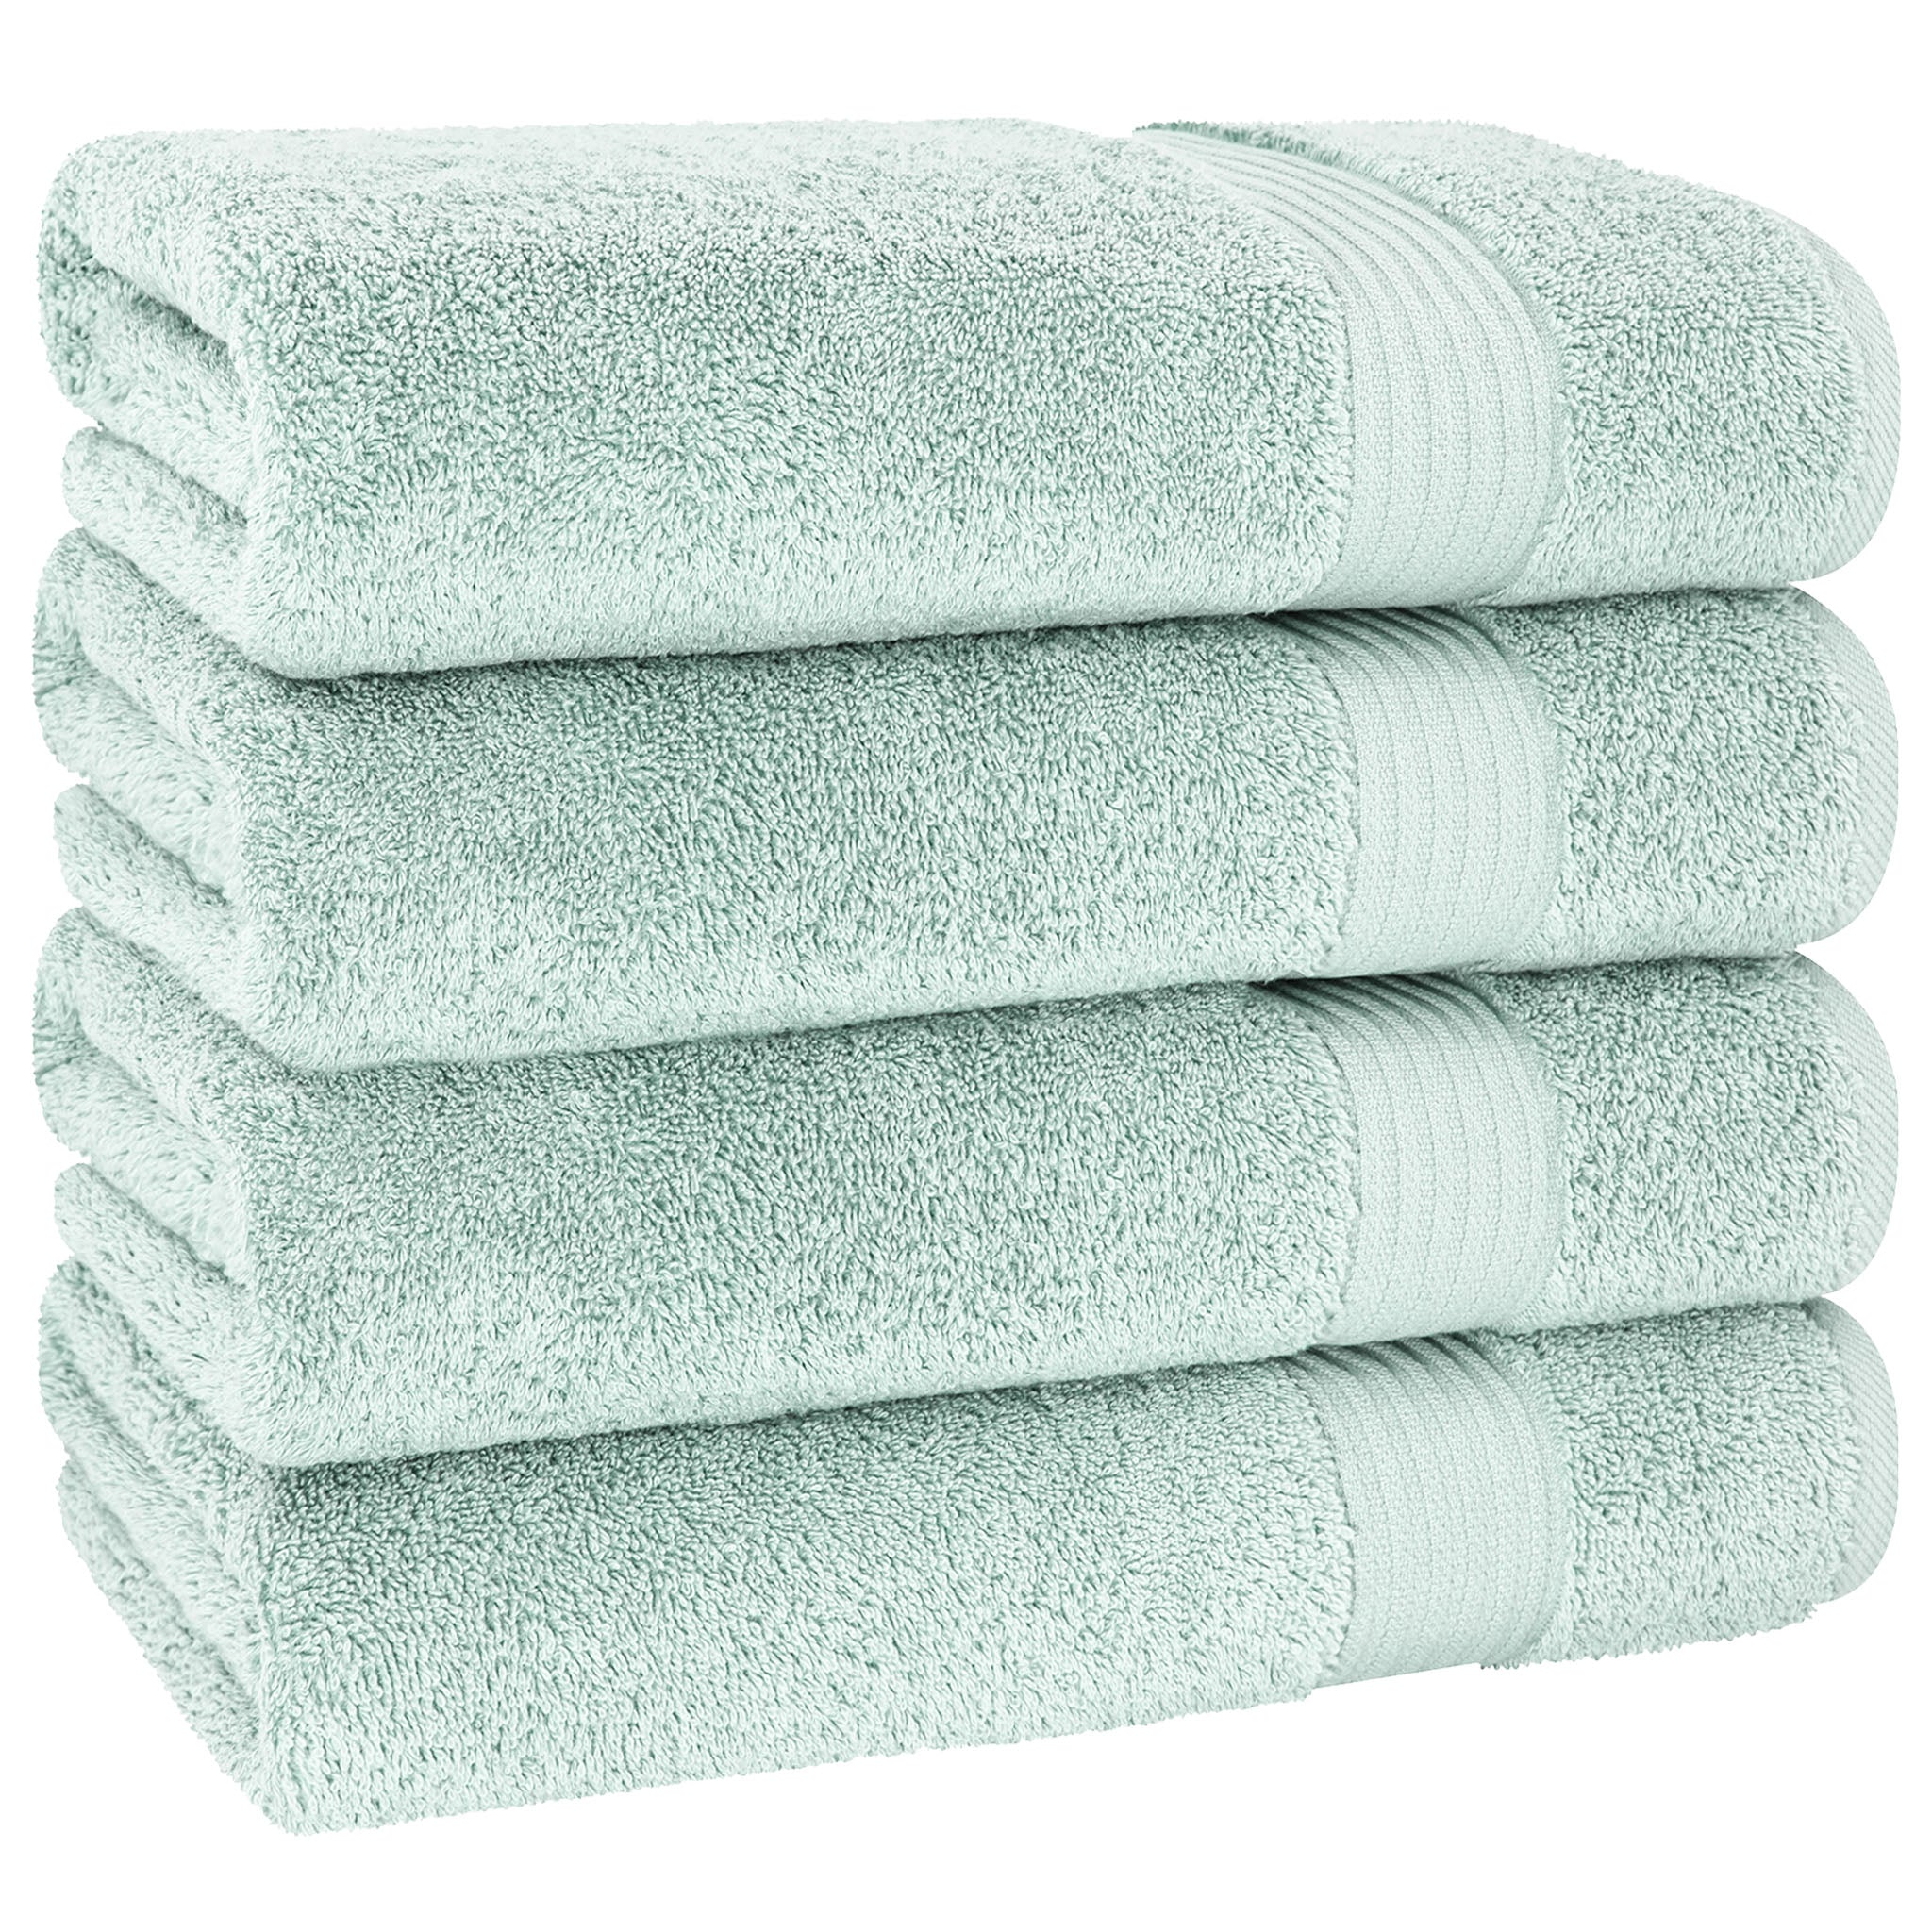 American Soft Linen Bekos 100% Cotton Turkish Towels, 4 Piece Bath Towel Set -mint-05